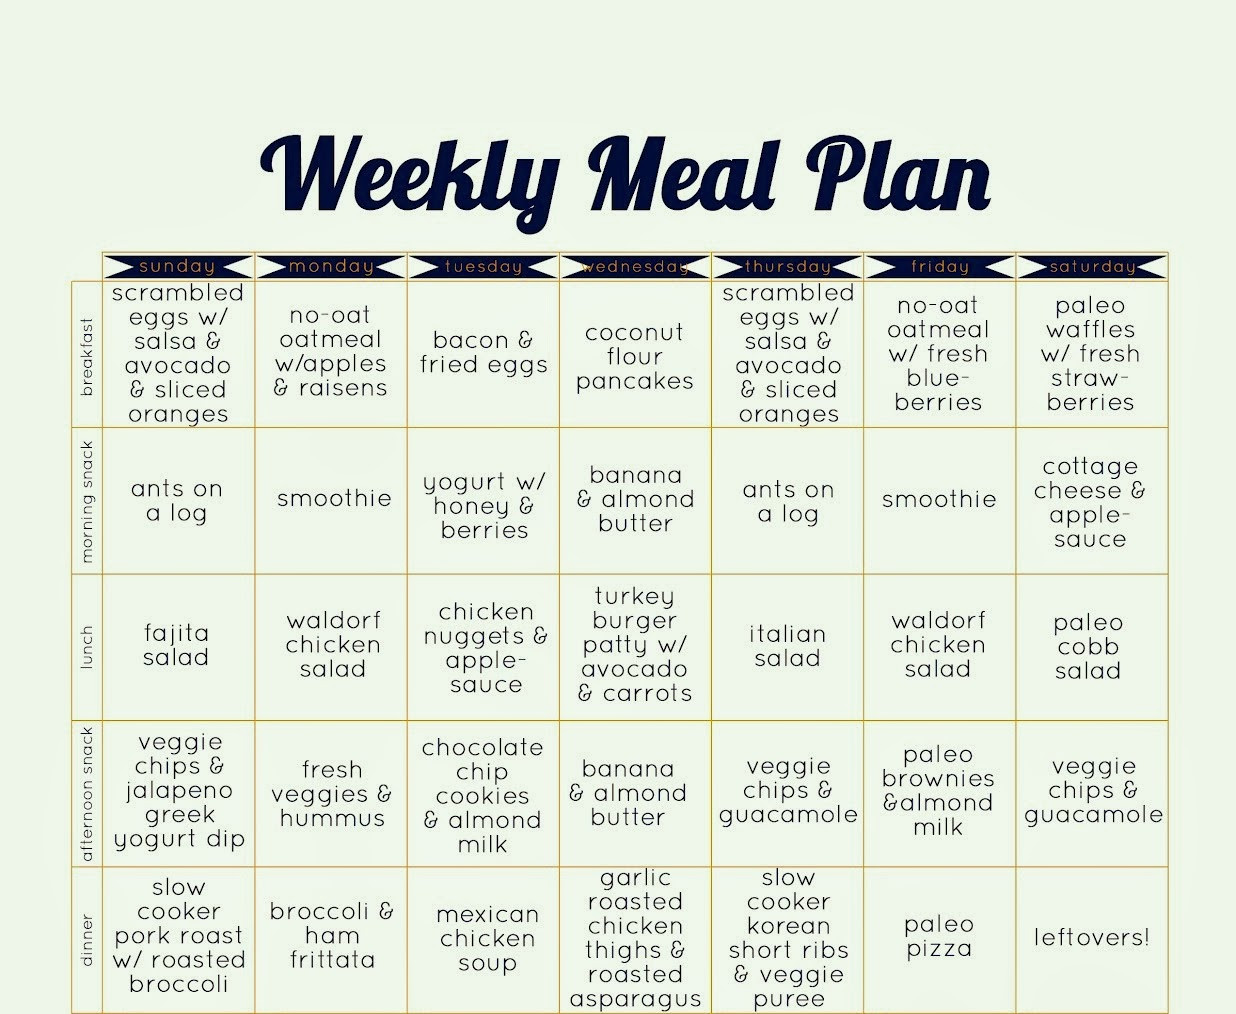 Paleo Diet Meal Plan Lovely February 2014 the Paleo Diet Blog